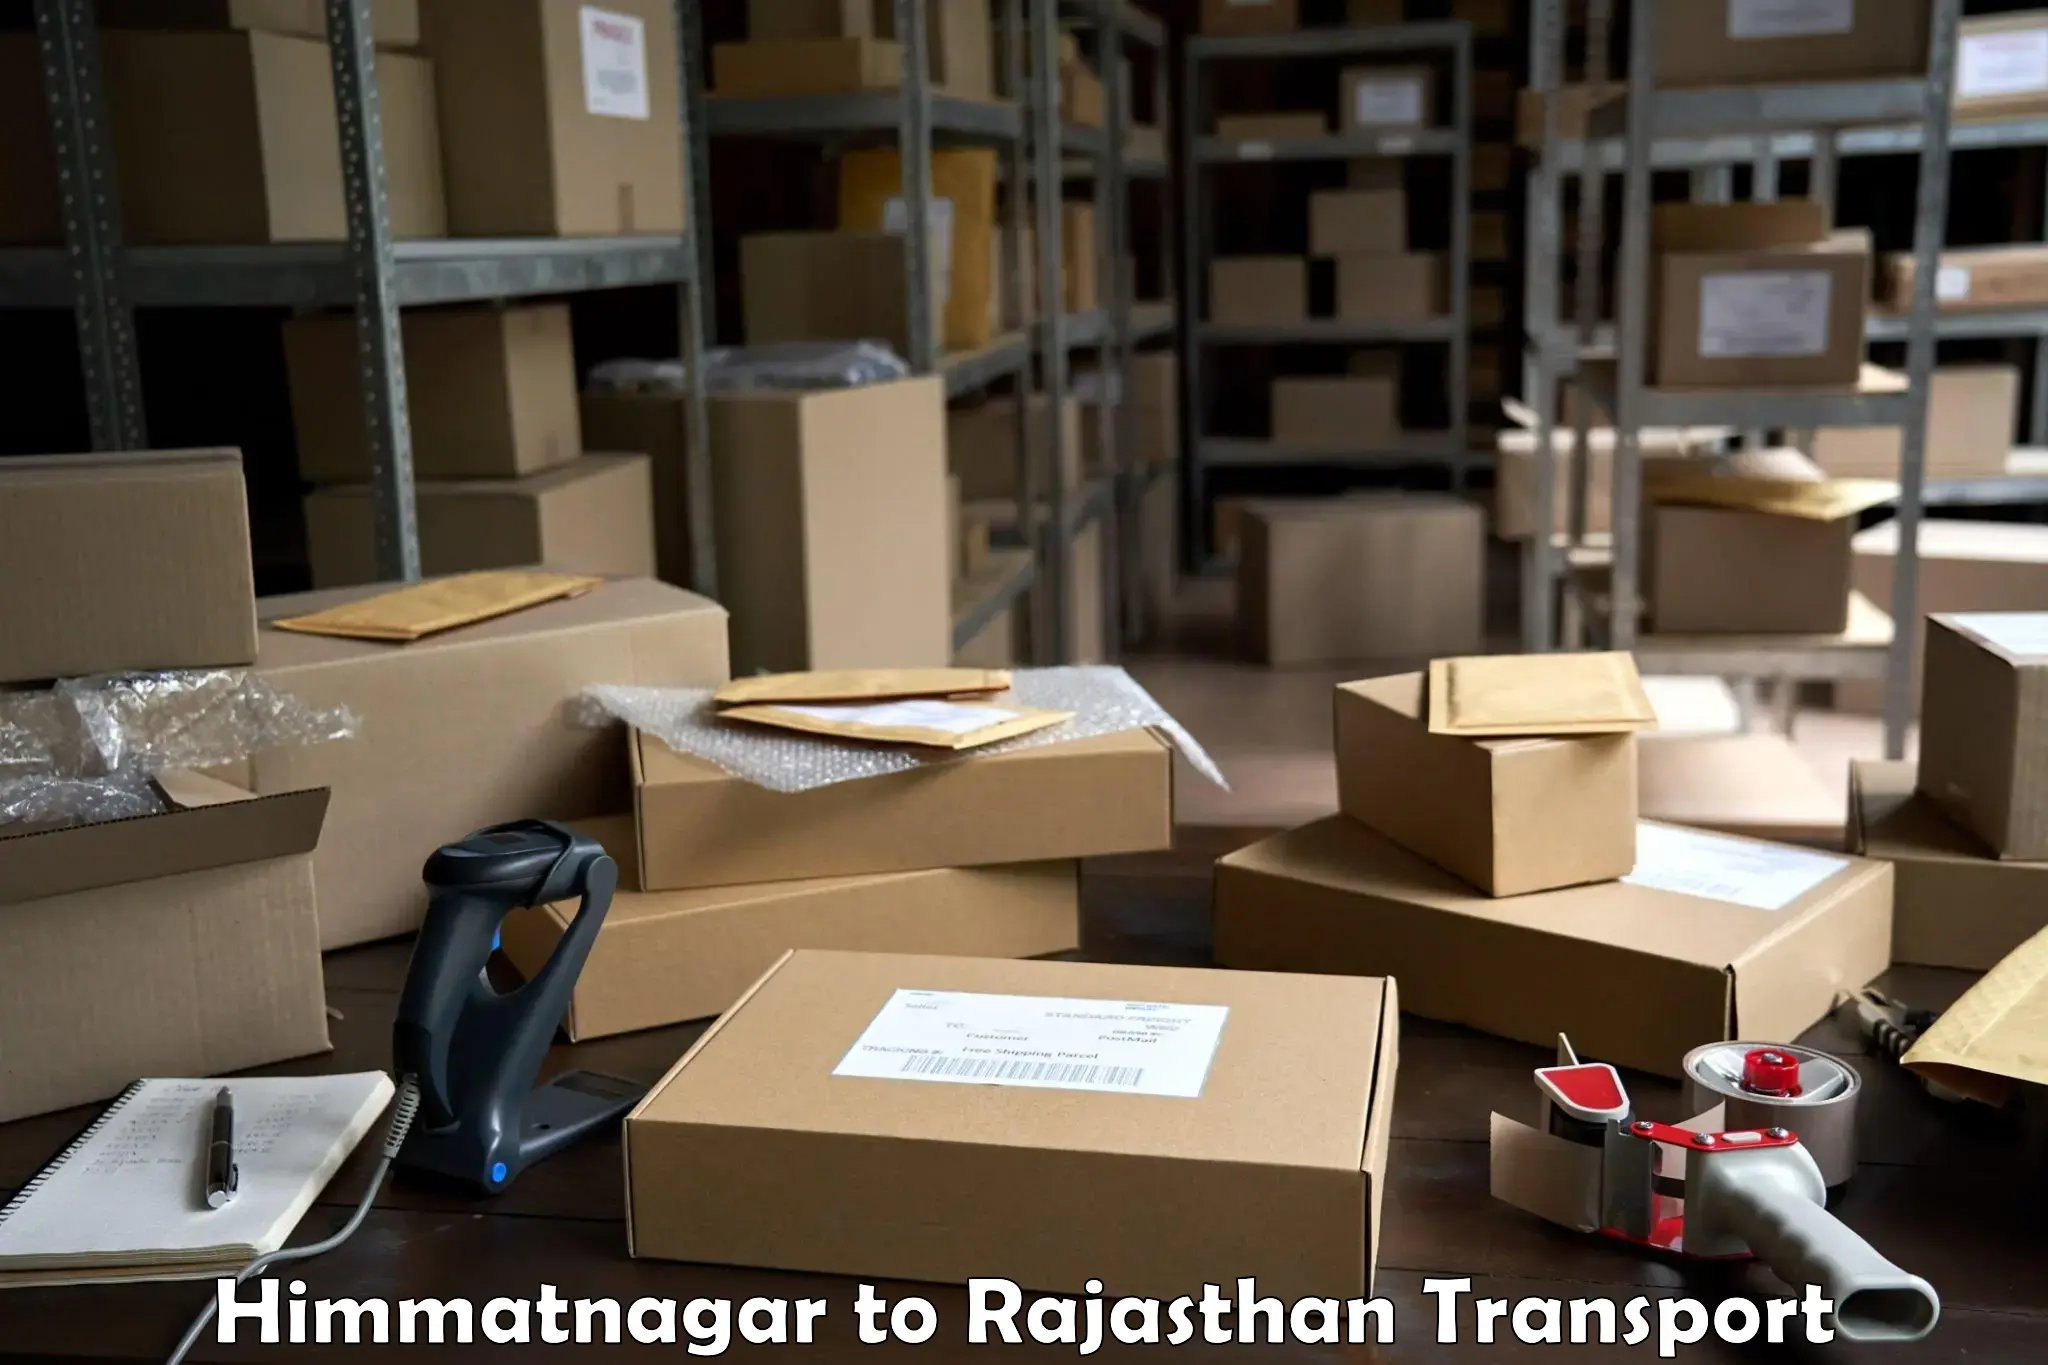 Shipping partner Himmatnagar to Kota